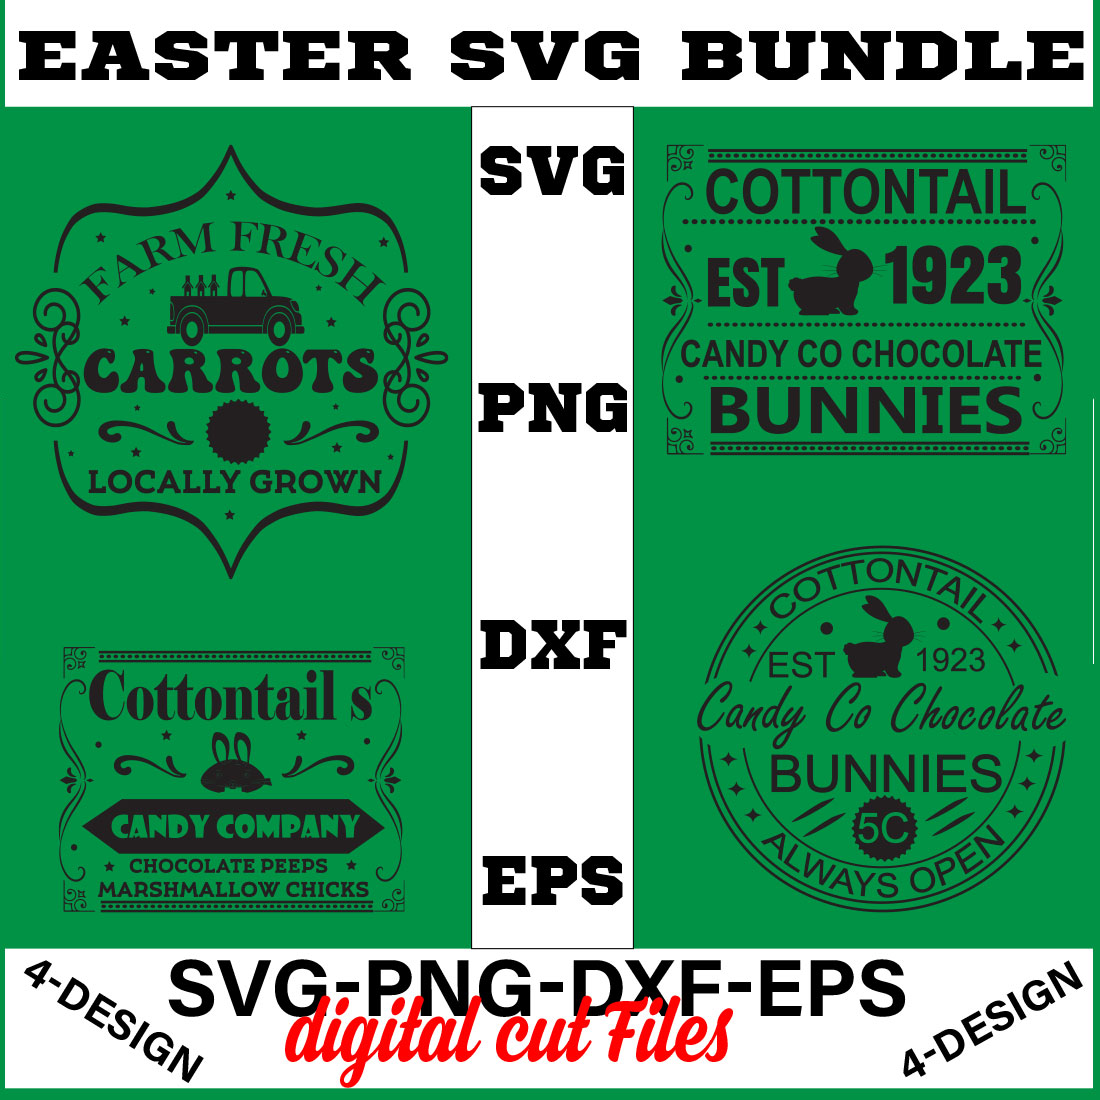 Happy Easter SVG Bundle, Easter SVG, Easter quotes, Easter Bunny svg, Easter Egg svg, Volume-09 cover image.